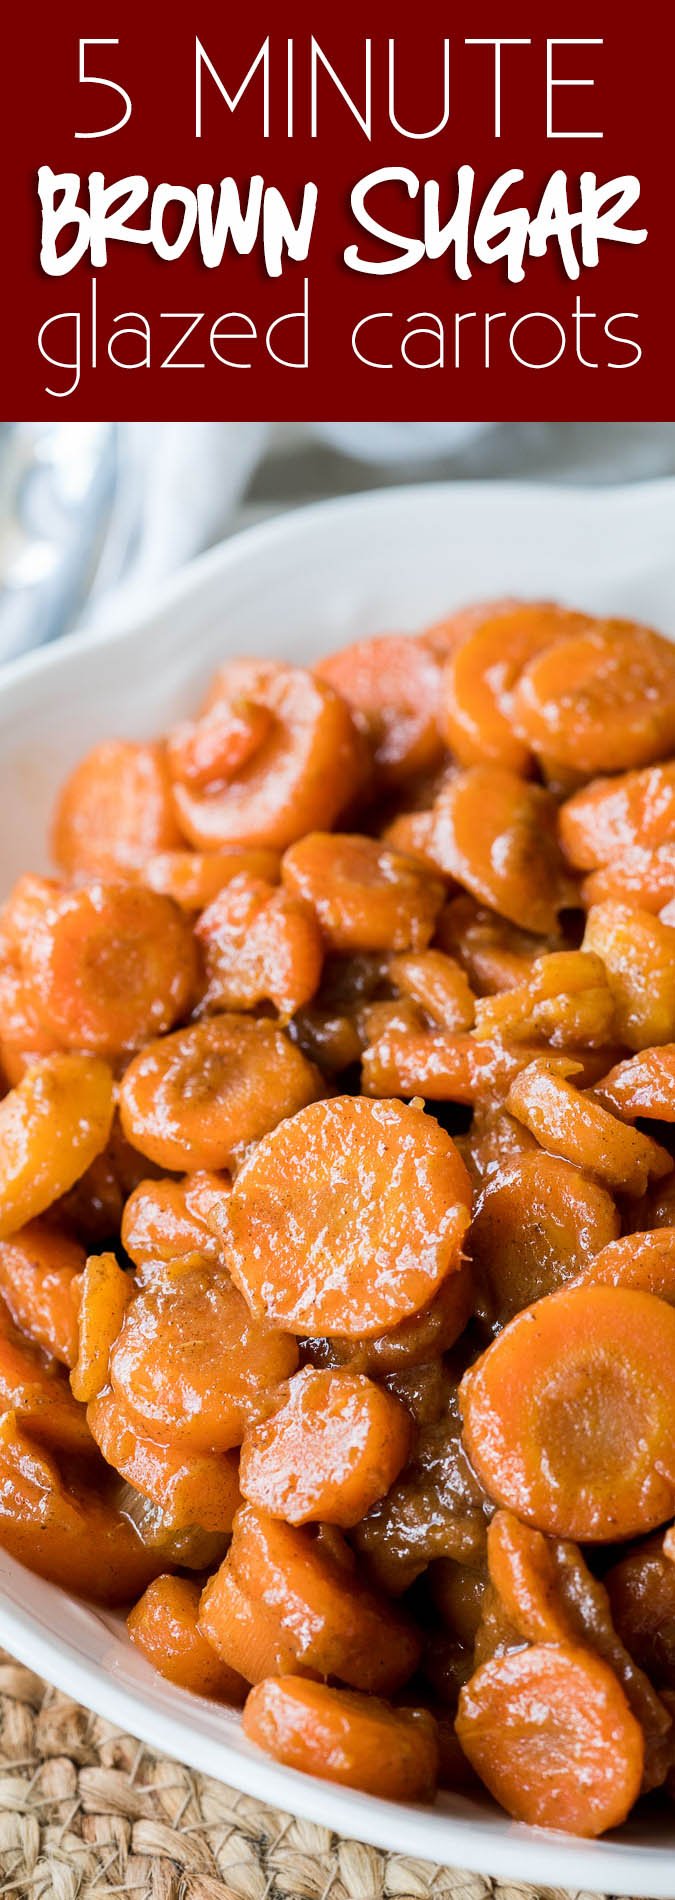 Diese Karotten mit brauner Zuckerglasur werden in nur 5 Minuten mit nur 5 einfachen Zutaten hergestellt! Perfekt für eine schnelle Thanksgiving-Beilage!